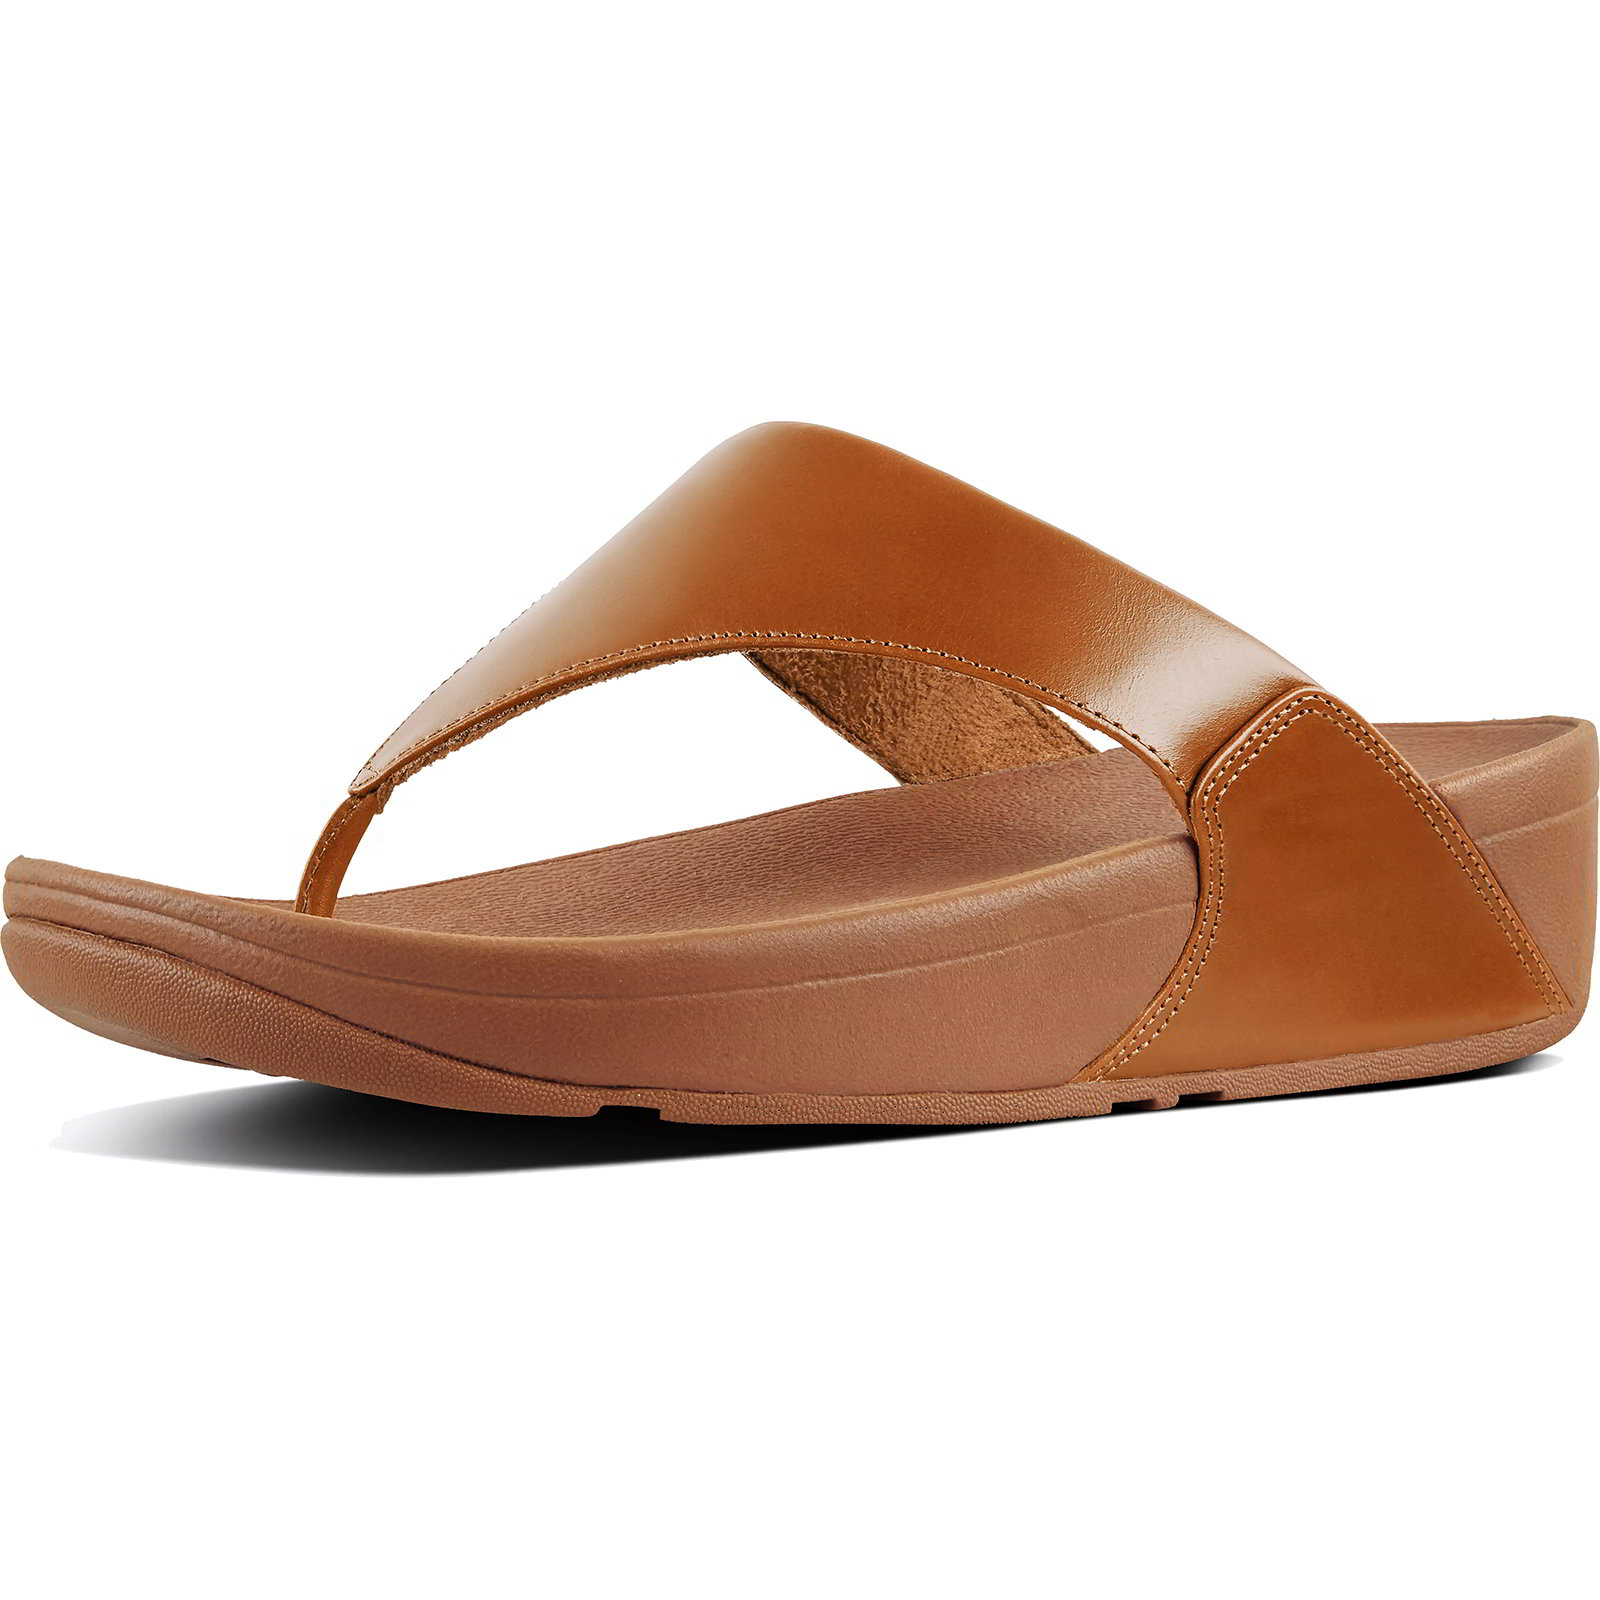 Fitflop Women's Lulu Leather Toe Post Flip Flop Sandals - Light Tan - UK 4